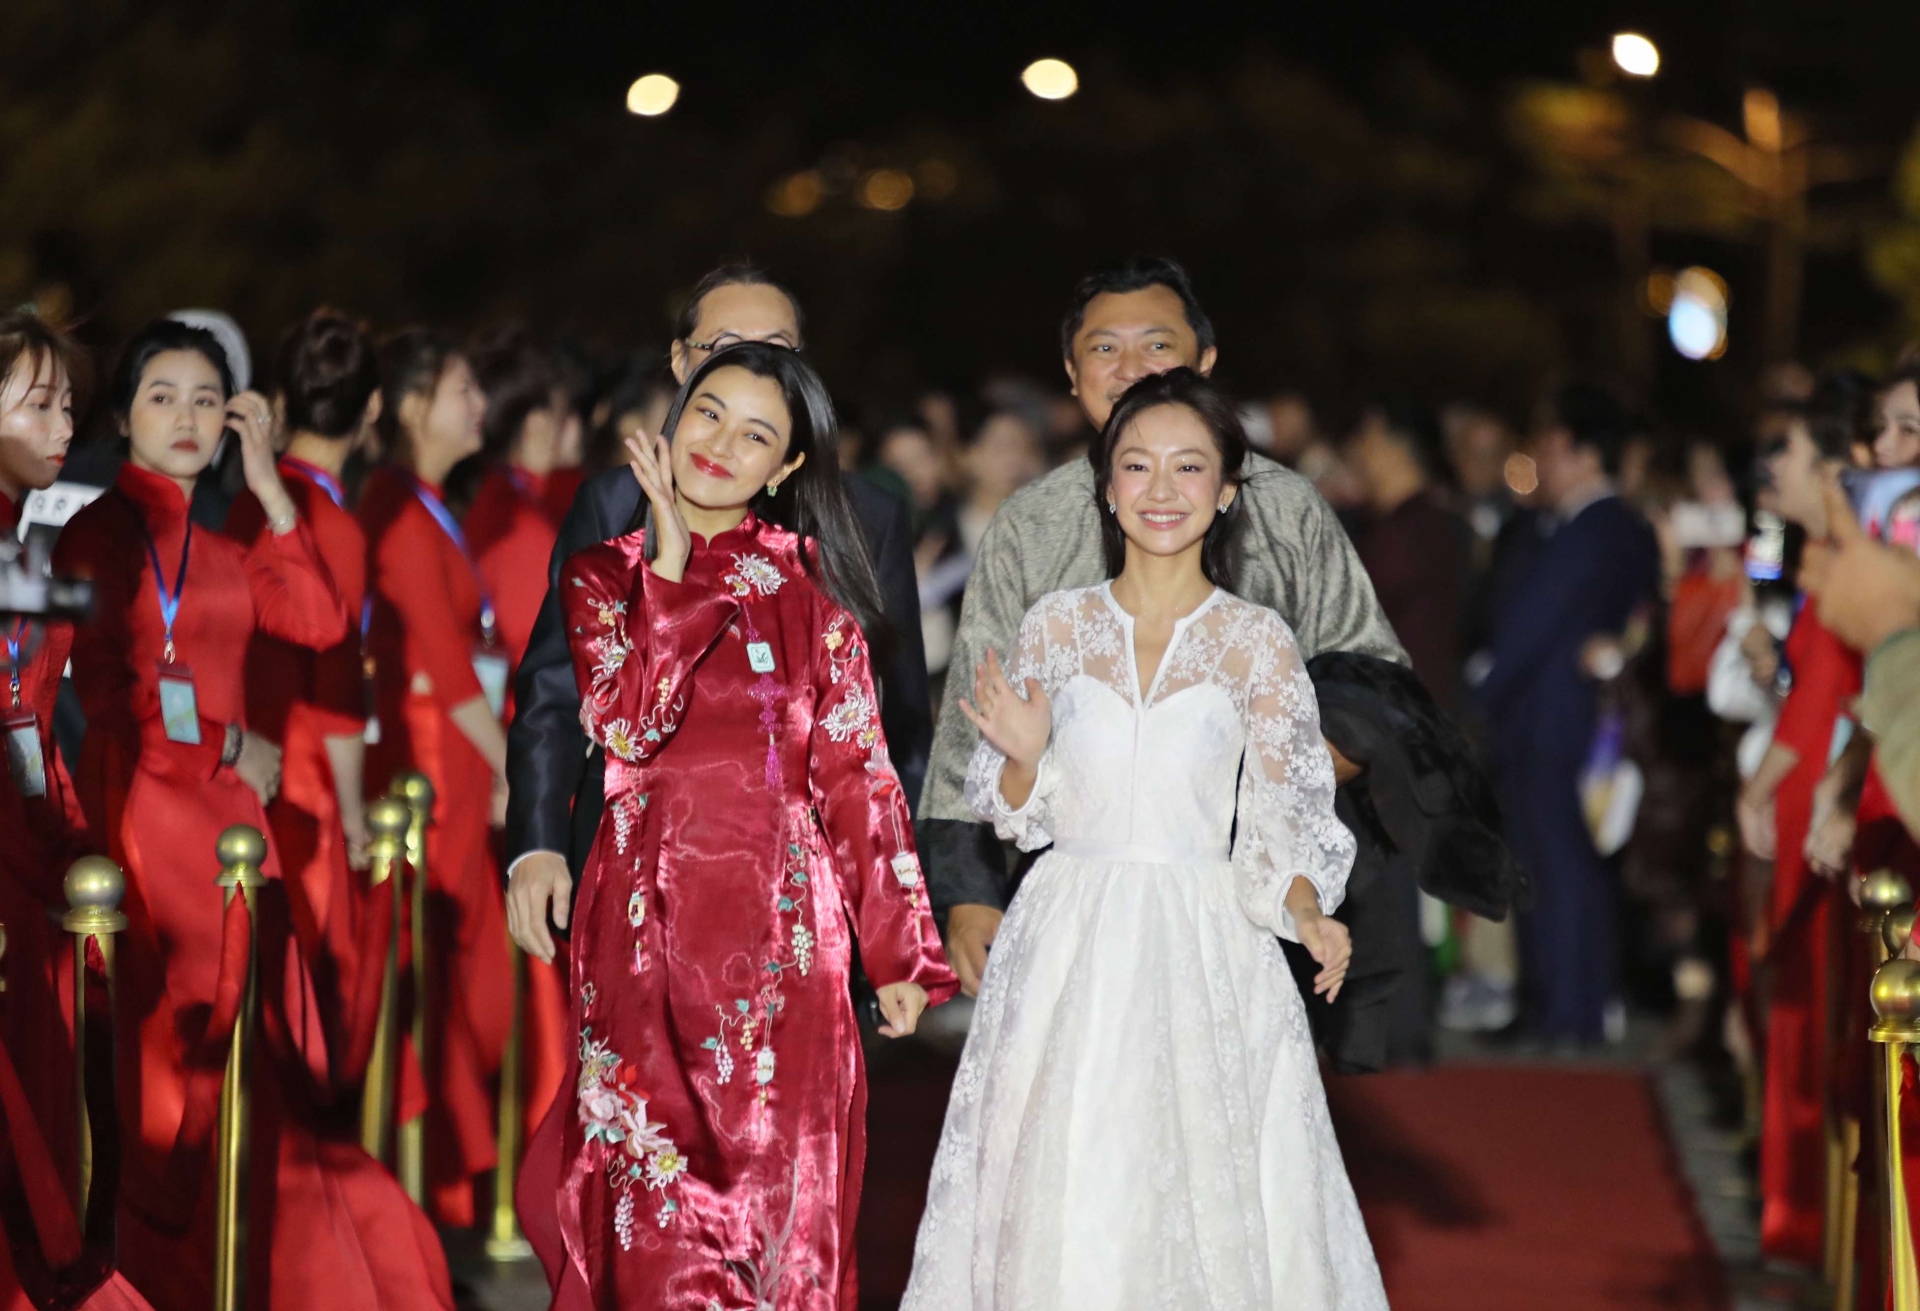 Buổi khai Liên hoan Phim Việt Nam lần thứ XXIII bắt đầu bằng phần thảm đỏ với sự góp mặt của nhiều nghệ sĩ, đoàn làm phim và khách mời nổi tiếng